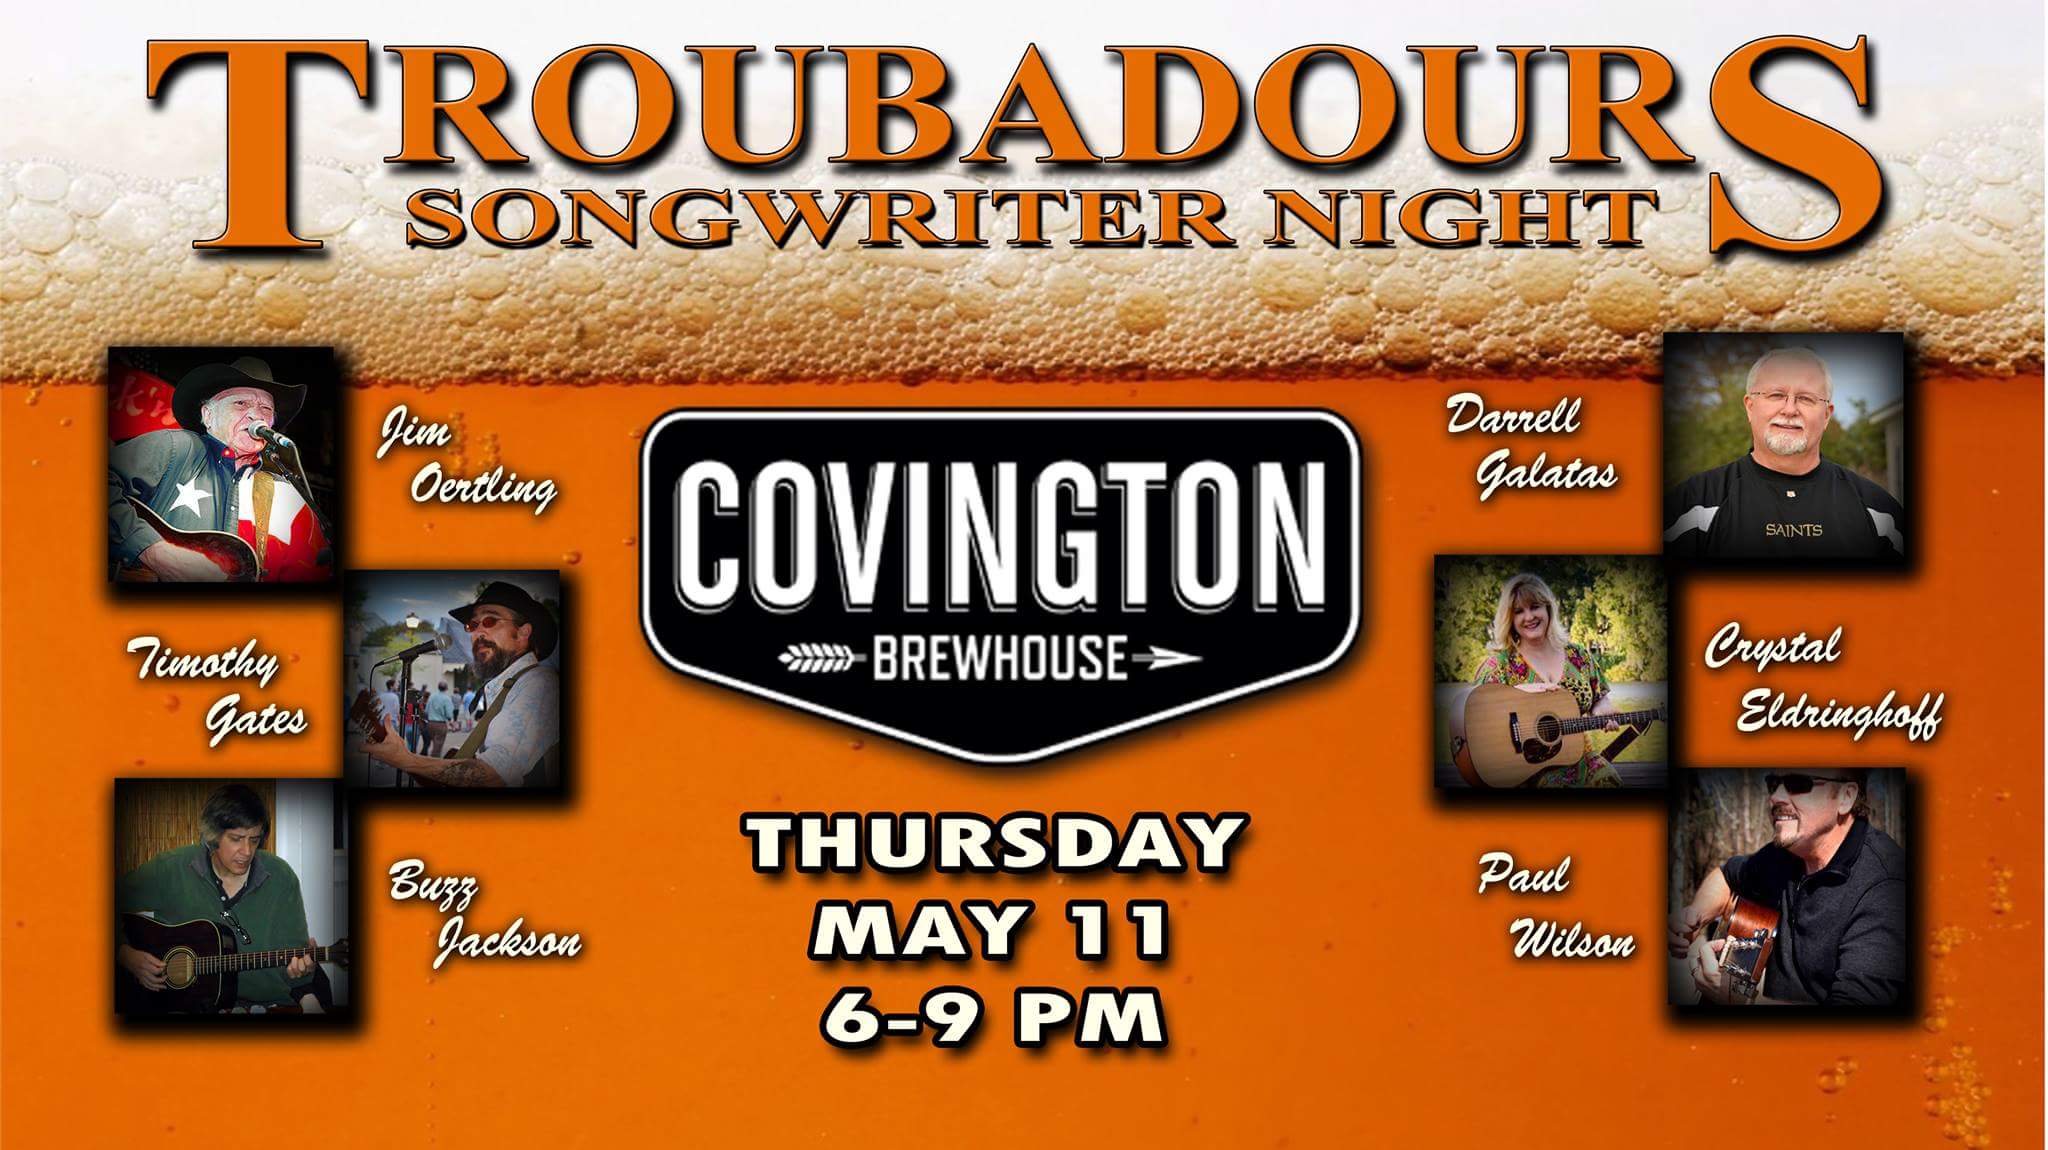 Thursday, May 11, 2017 at Covington Brewhouse